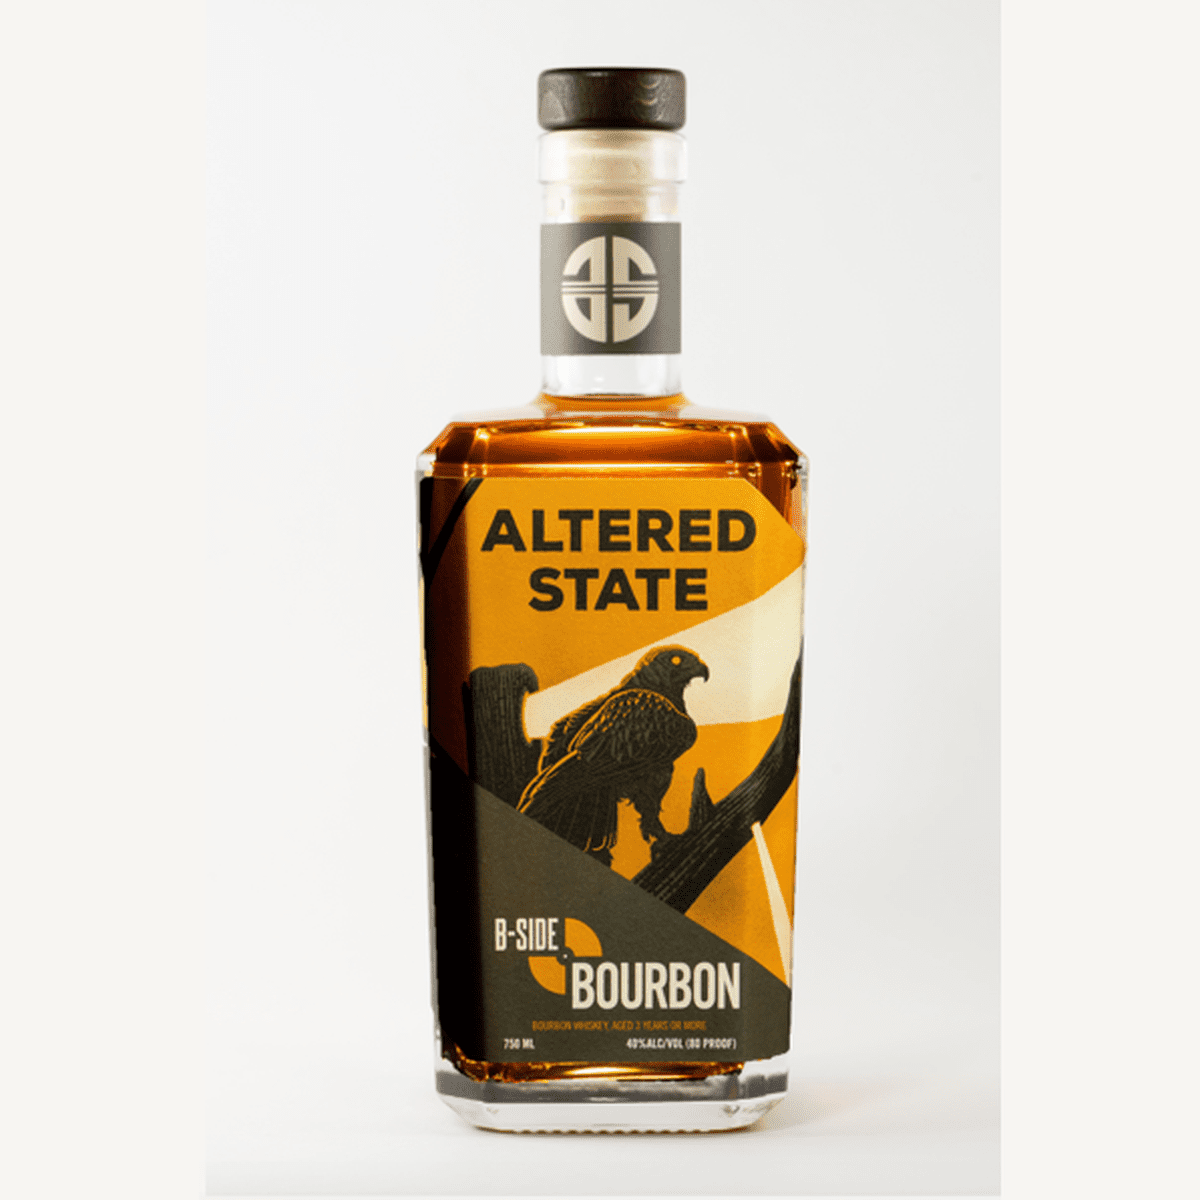 Altered State - B-Side Bourbon - 750mL Bottle